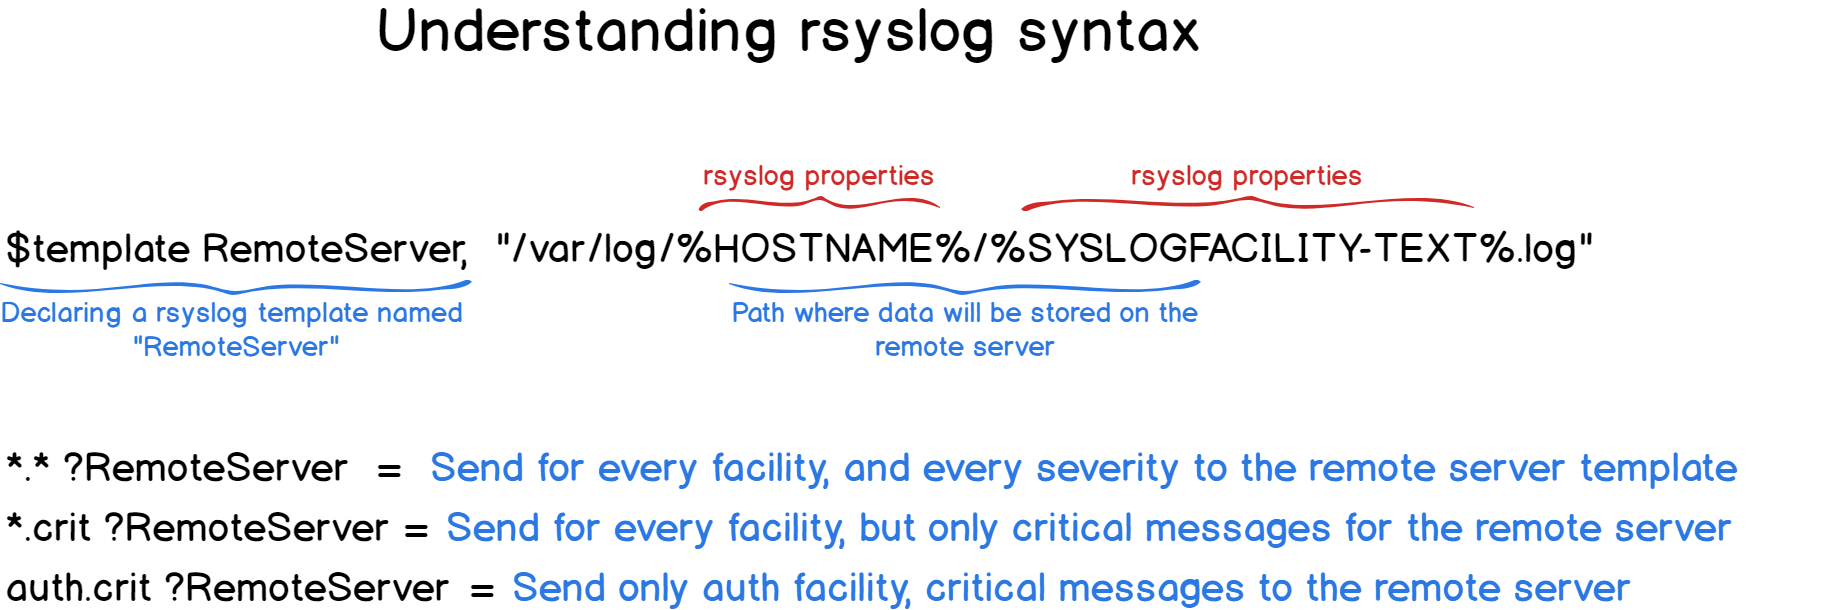 rsyslog-syntax